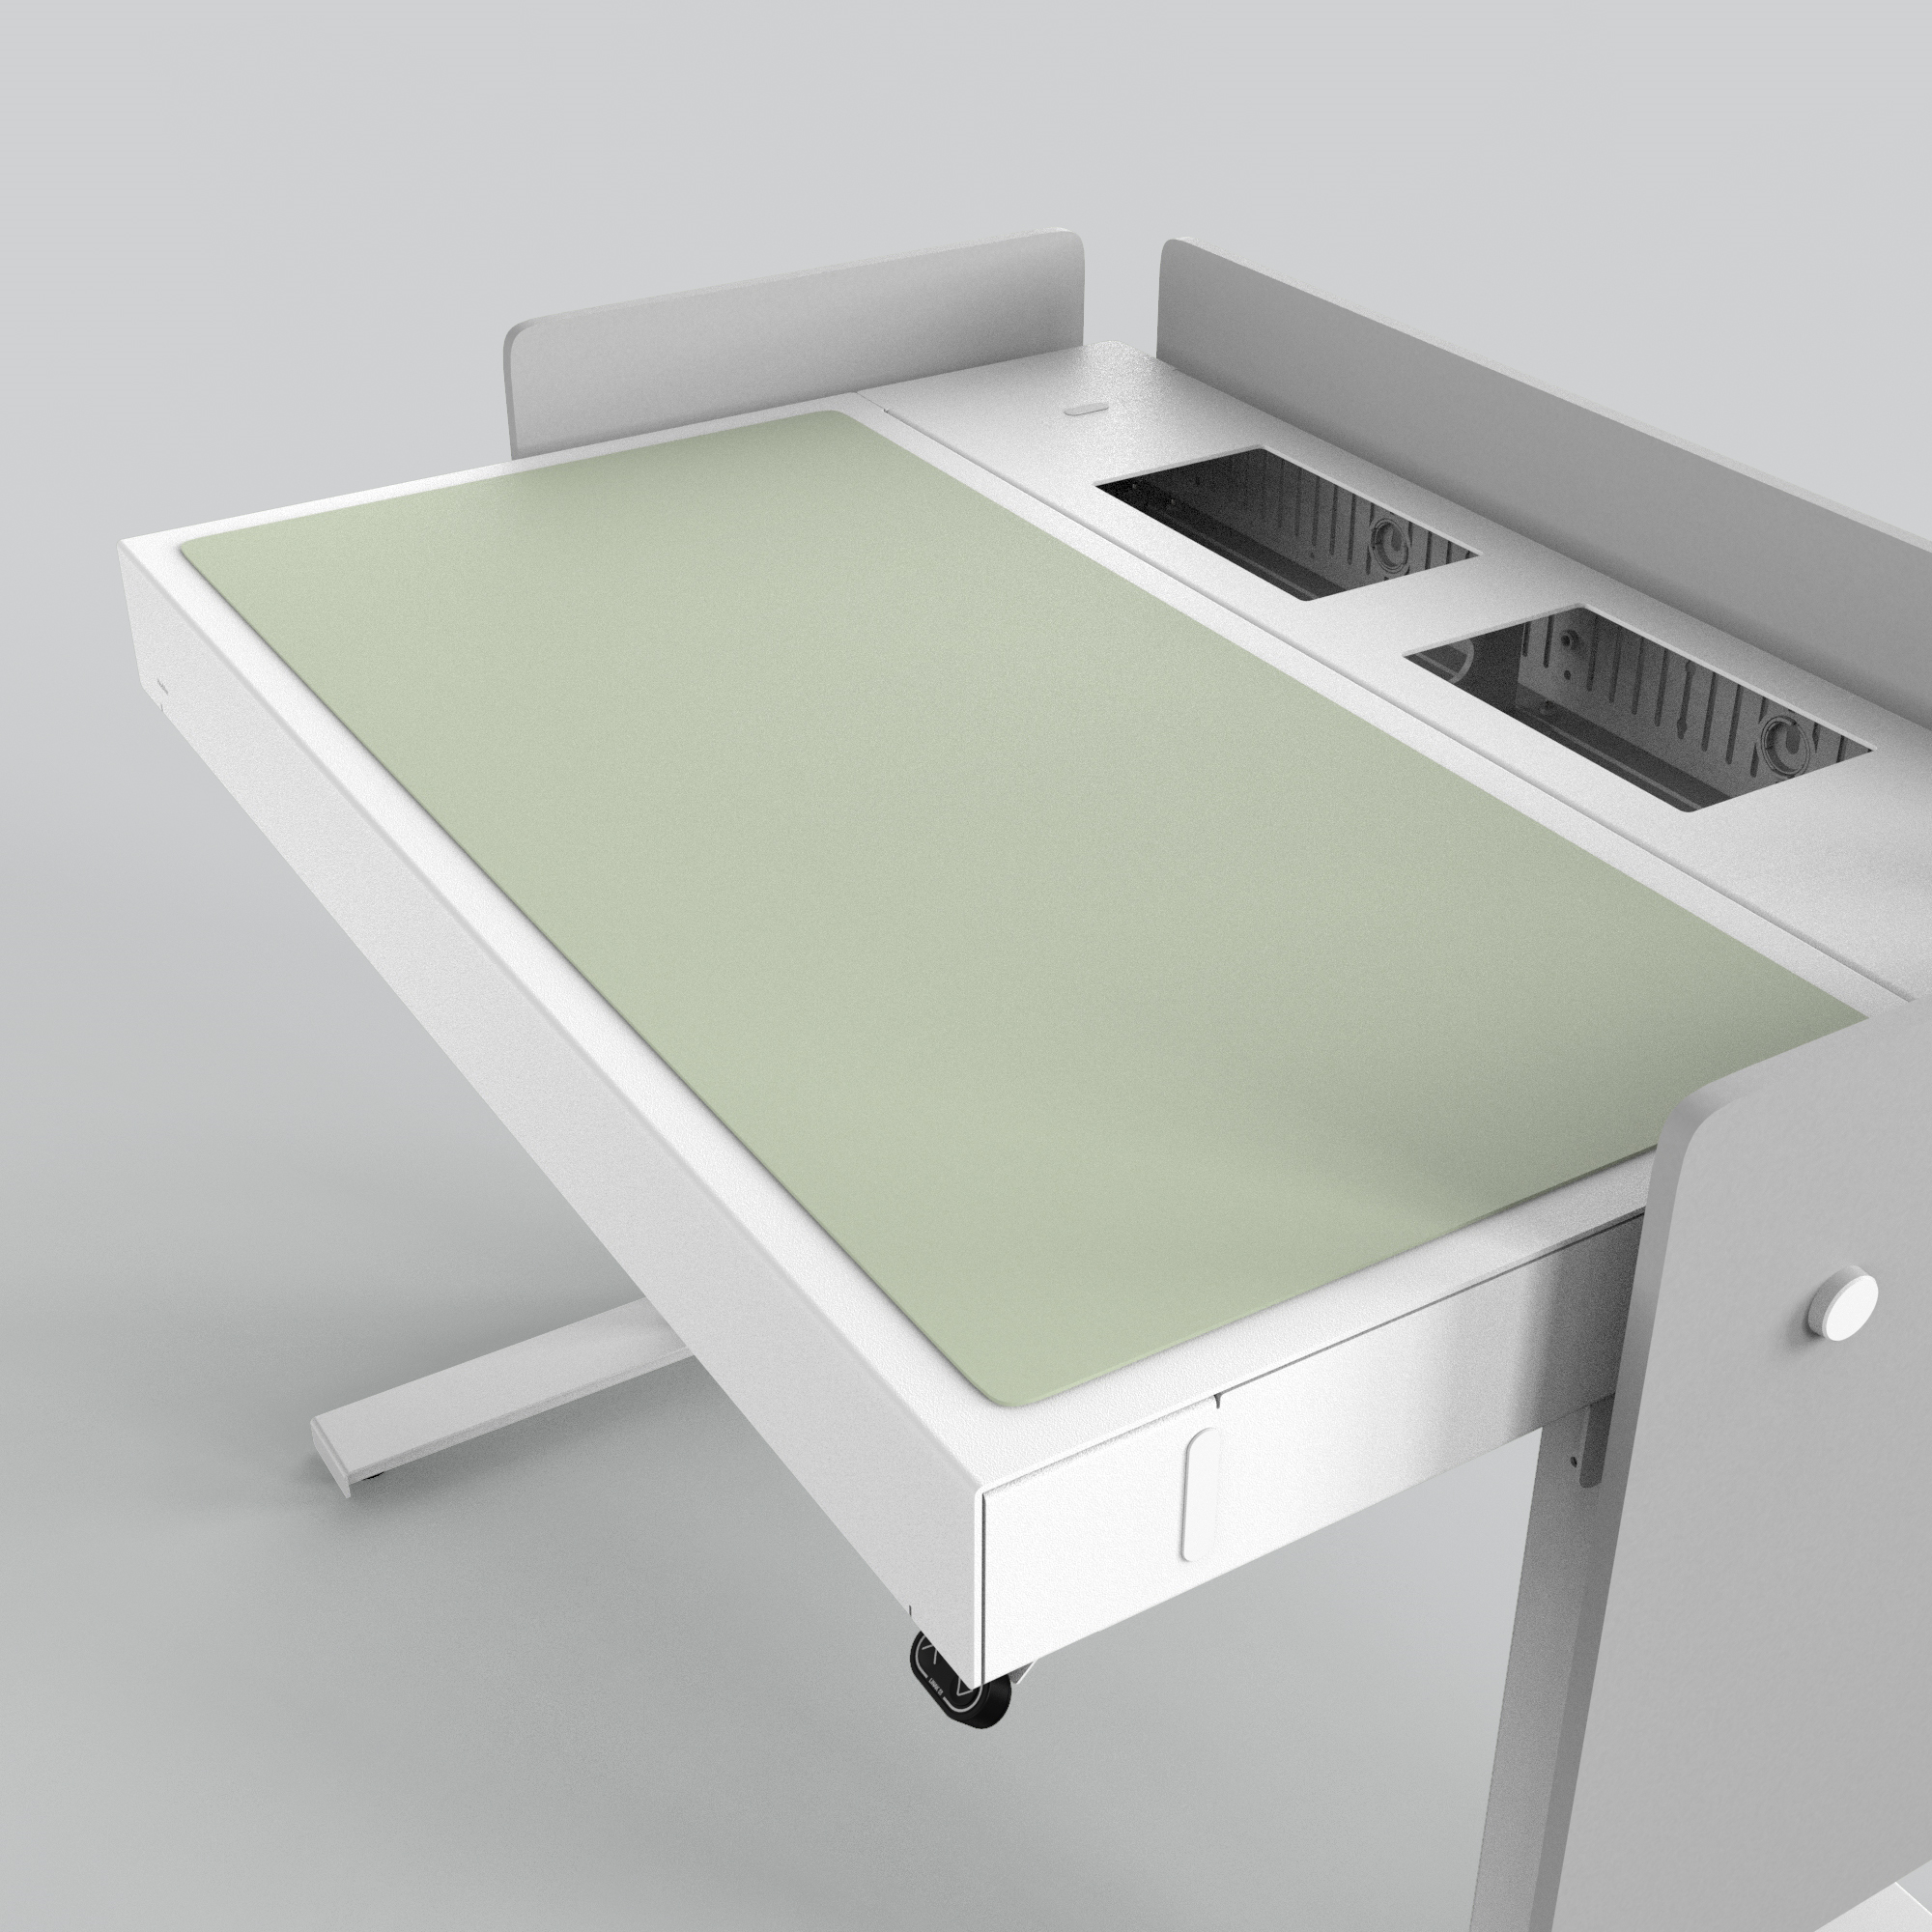 H922-4183 4U Deskpad - Pistachio